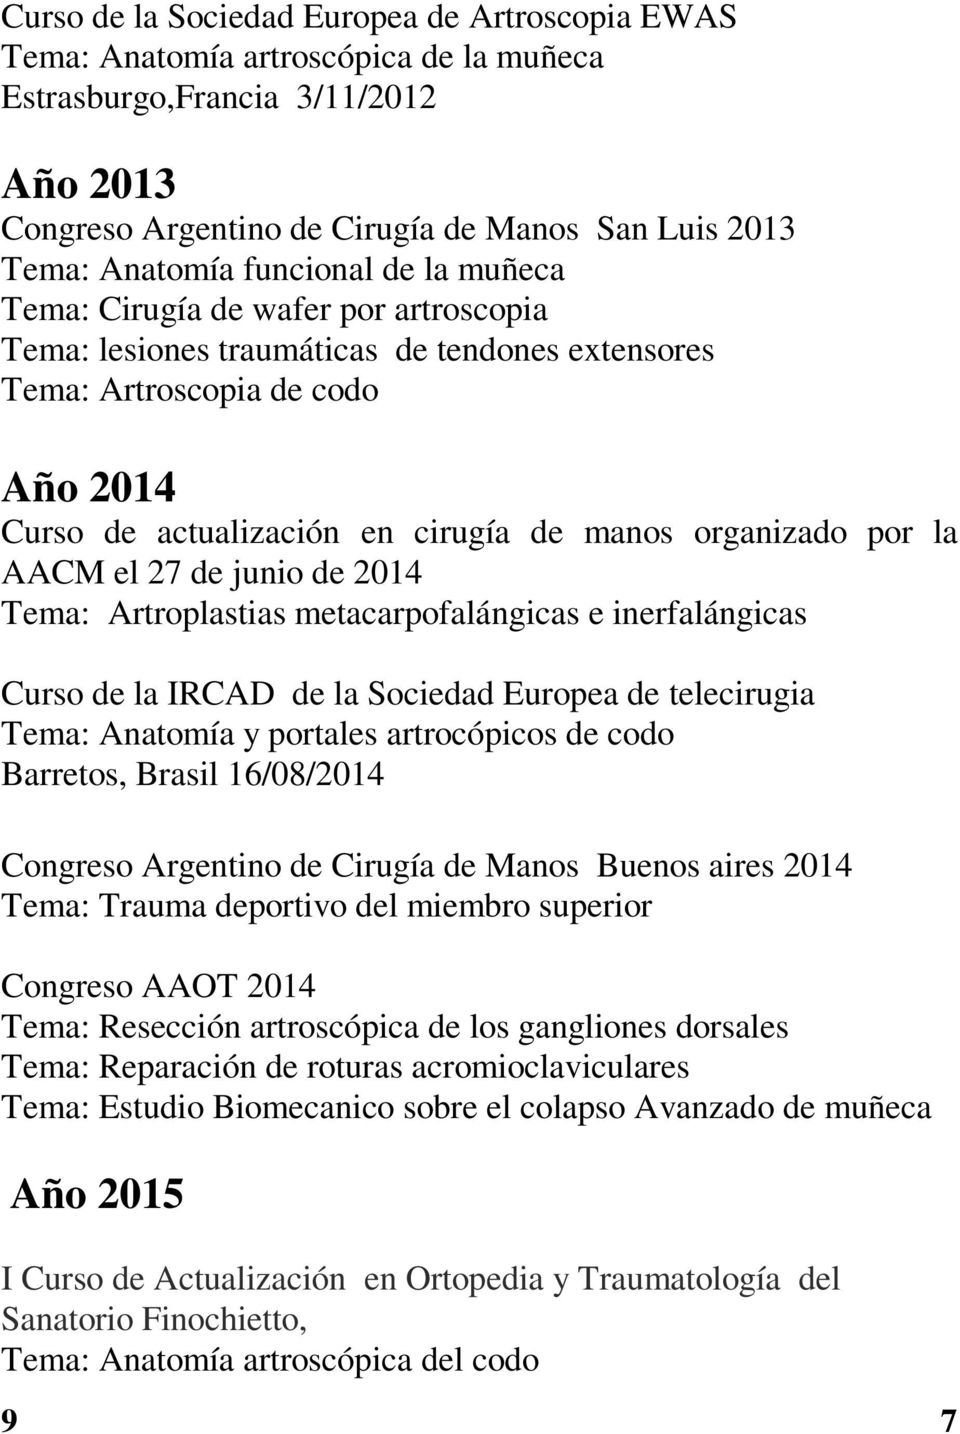 organizado por la AACM el 27 de junio de 2014 Tema: Artroplastias metacarpofalángicas e inerfalángicas Curso de la IRCAD de la Sociedad Europea de telecirugia Tema: Anatomía y portales artrocópicos